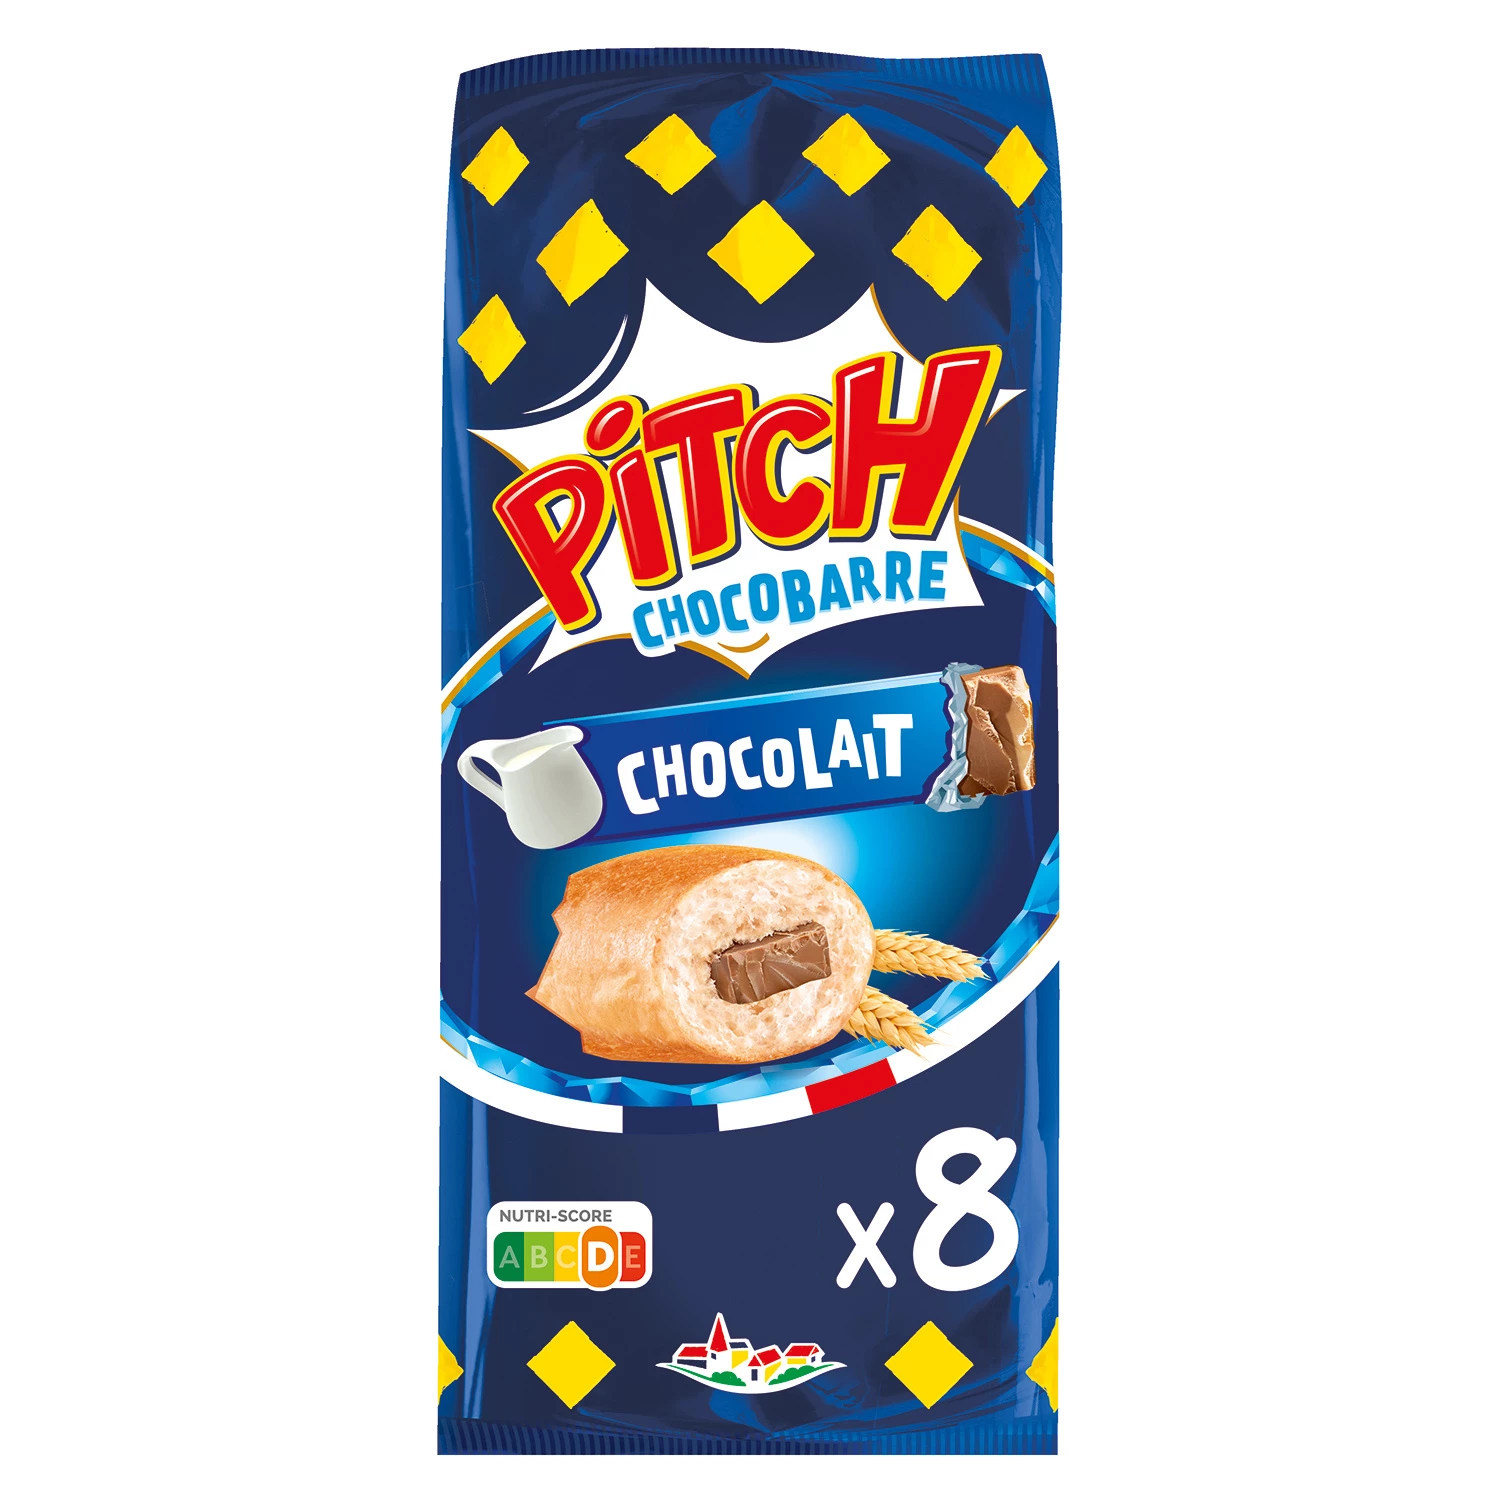 Brioche Pitch Chocobarre au Chocolat au Lait X8 300g - BRIOCHE PASQUIER